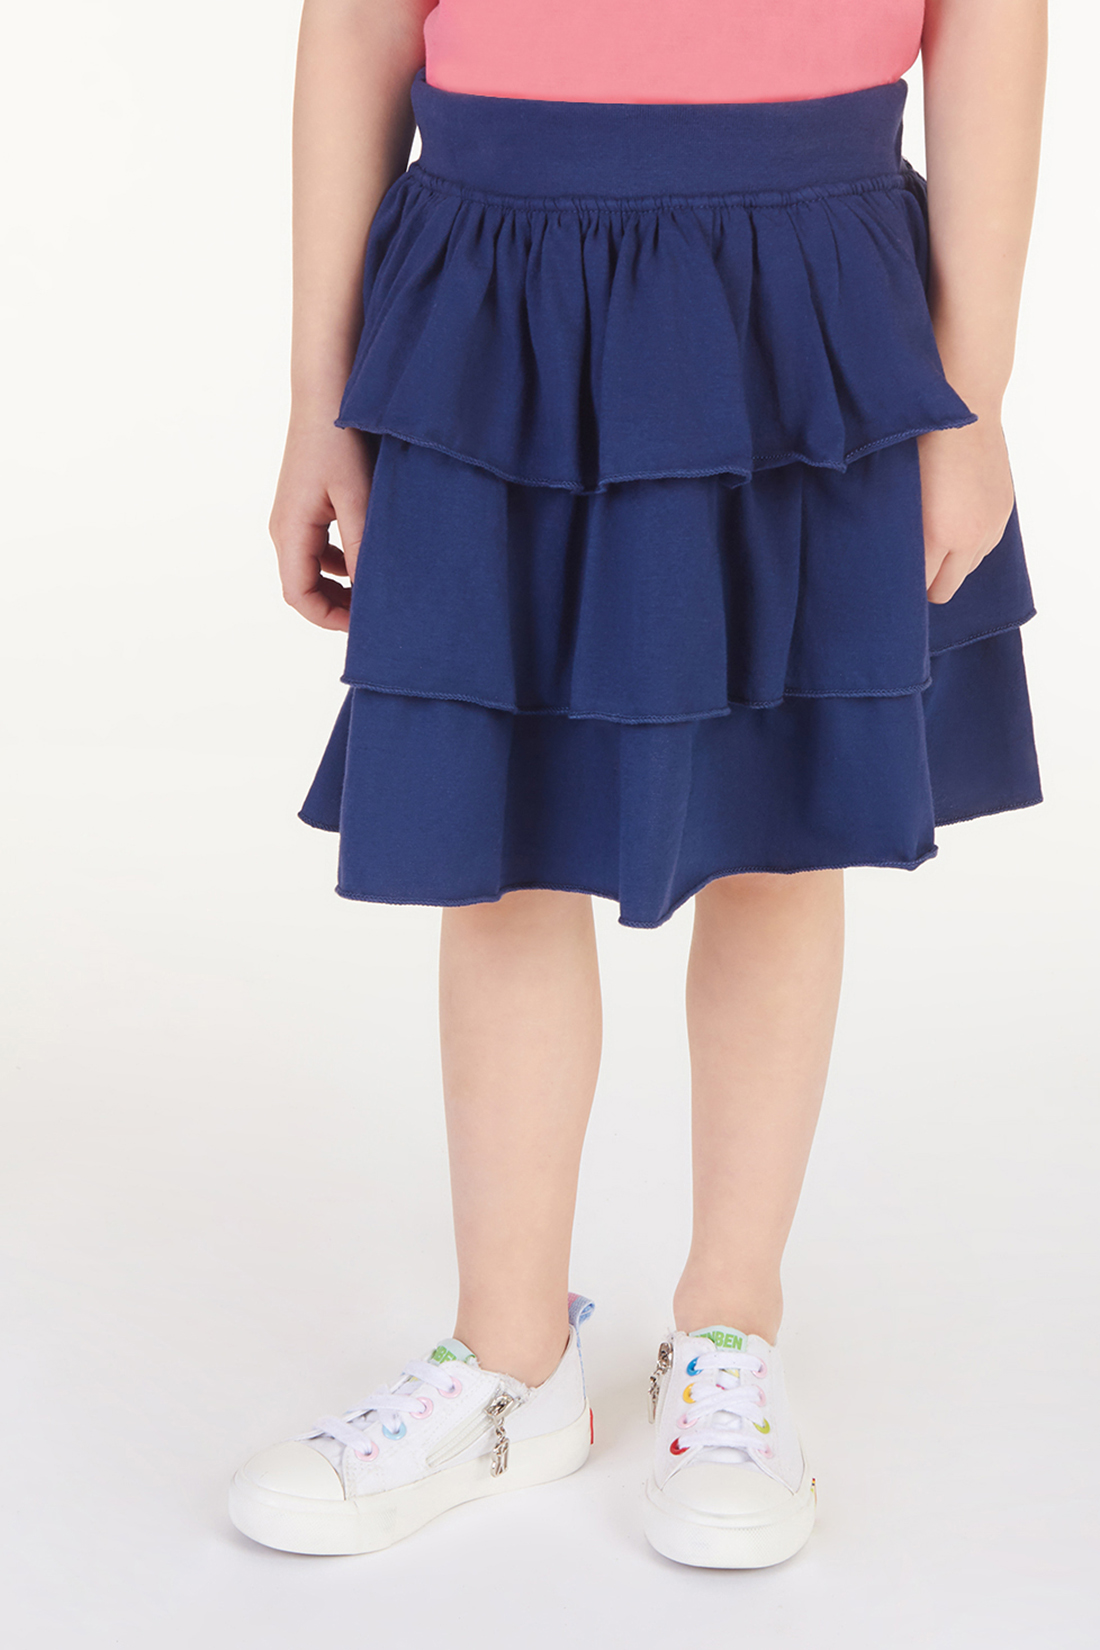 Юбка для девочки (арт. baon BK478004), размер 98-104, цвет синий